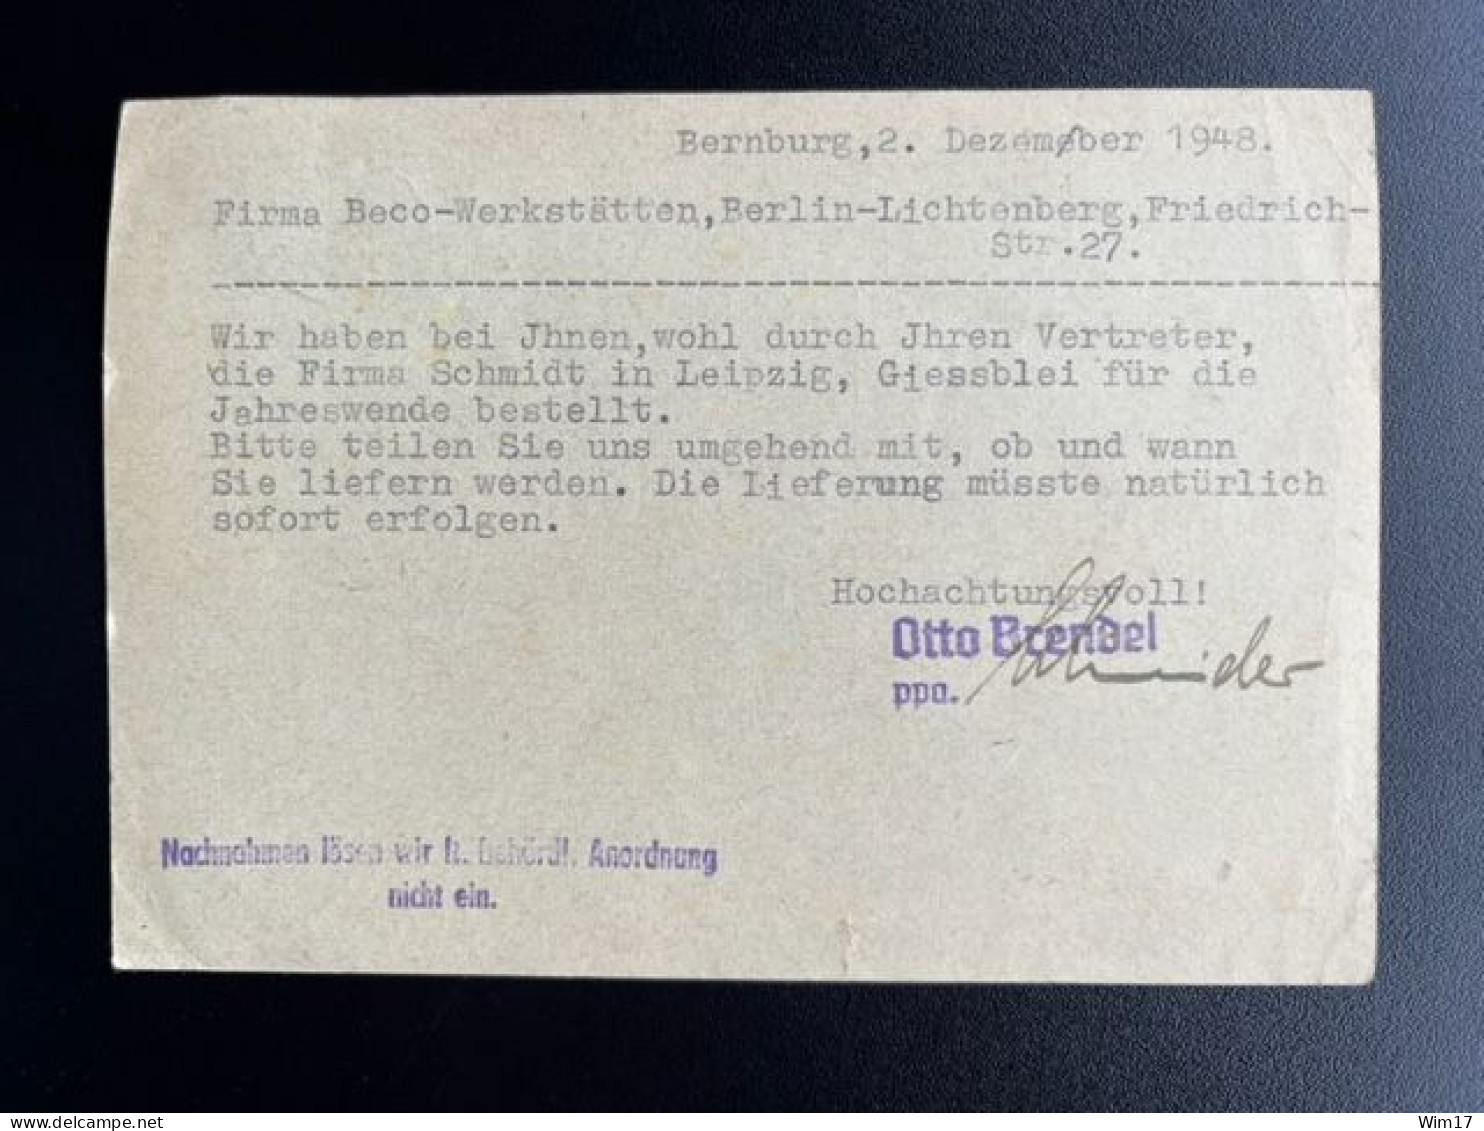 GERMANY 1948 POSTCARD BERNBURG TO BERLIN LICHTENBERG 03-12-1948 DUITSLAND DEUTSCHLAND - Enteros Postales